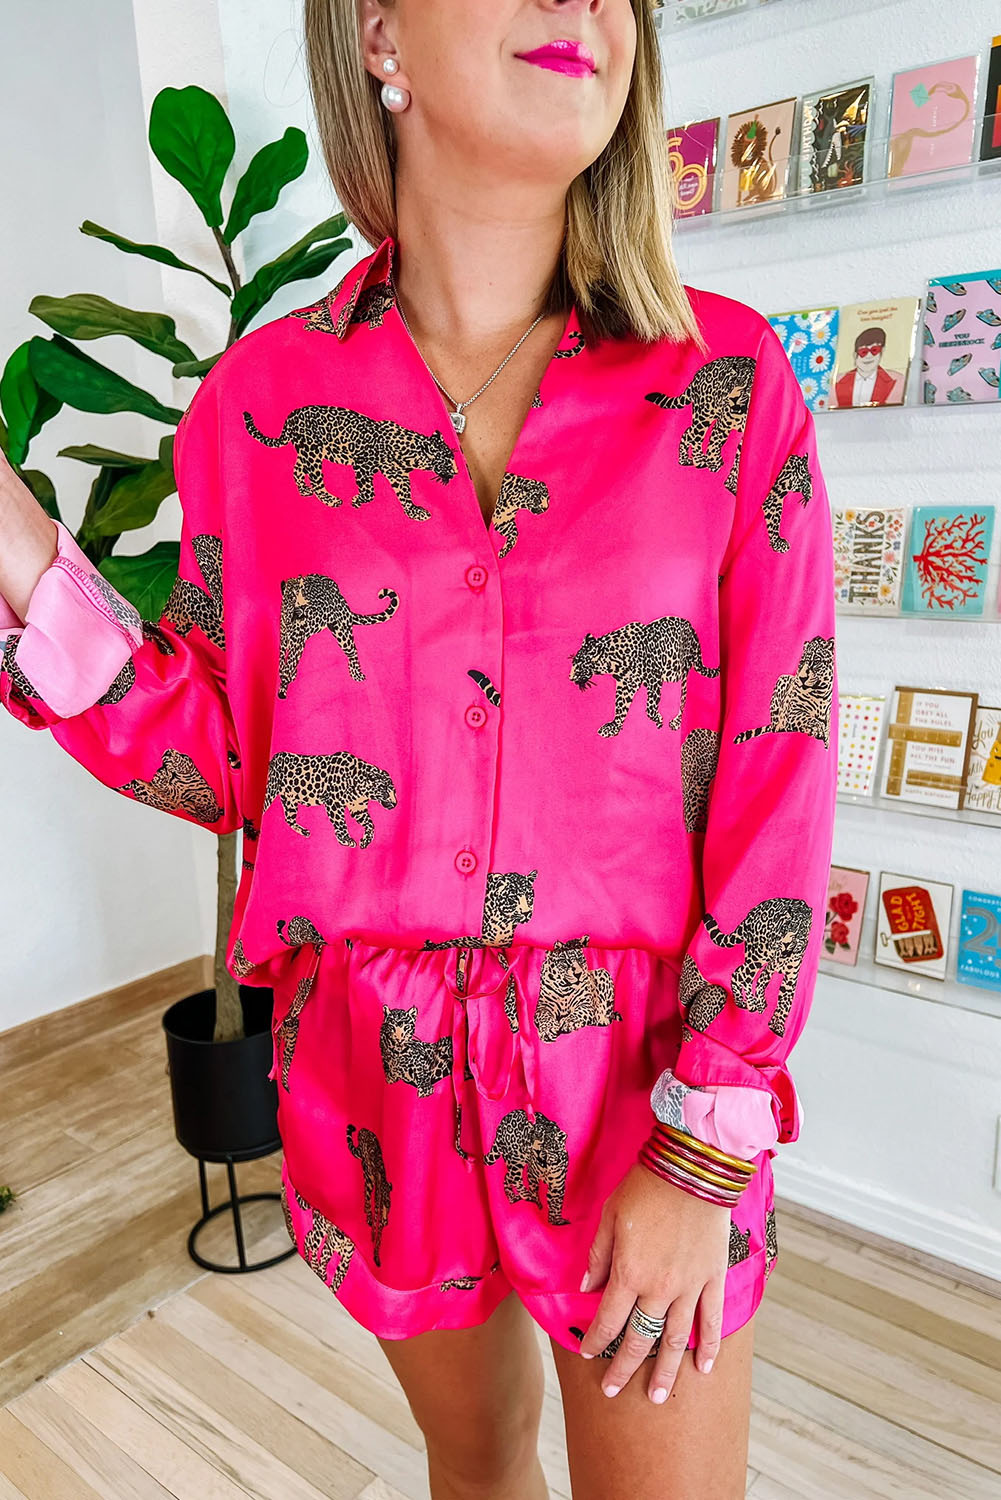 Shewin Wholesale Western Apparel Hot Pink Animal Print Shirt and Drawstring SHORTS Set